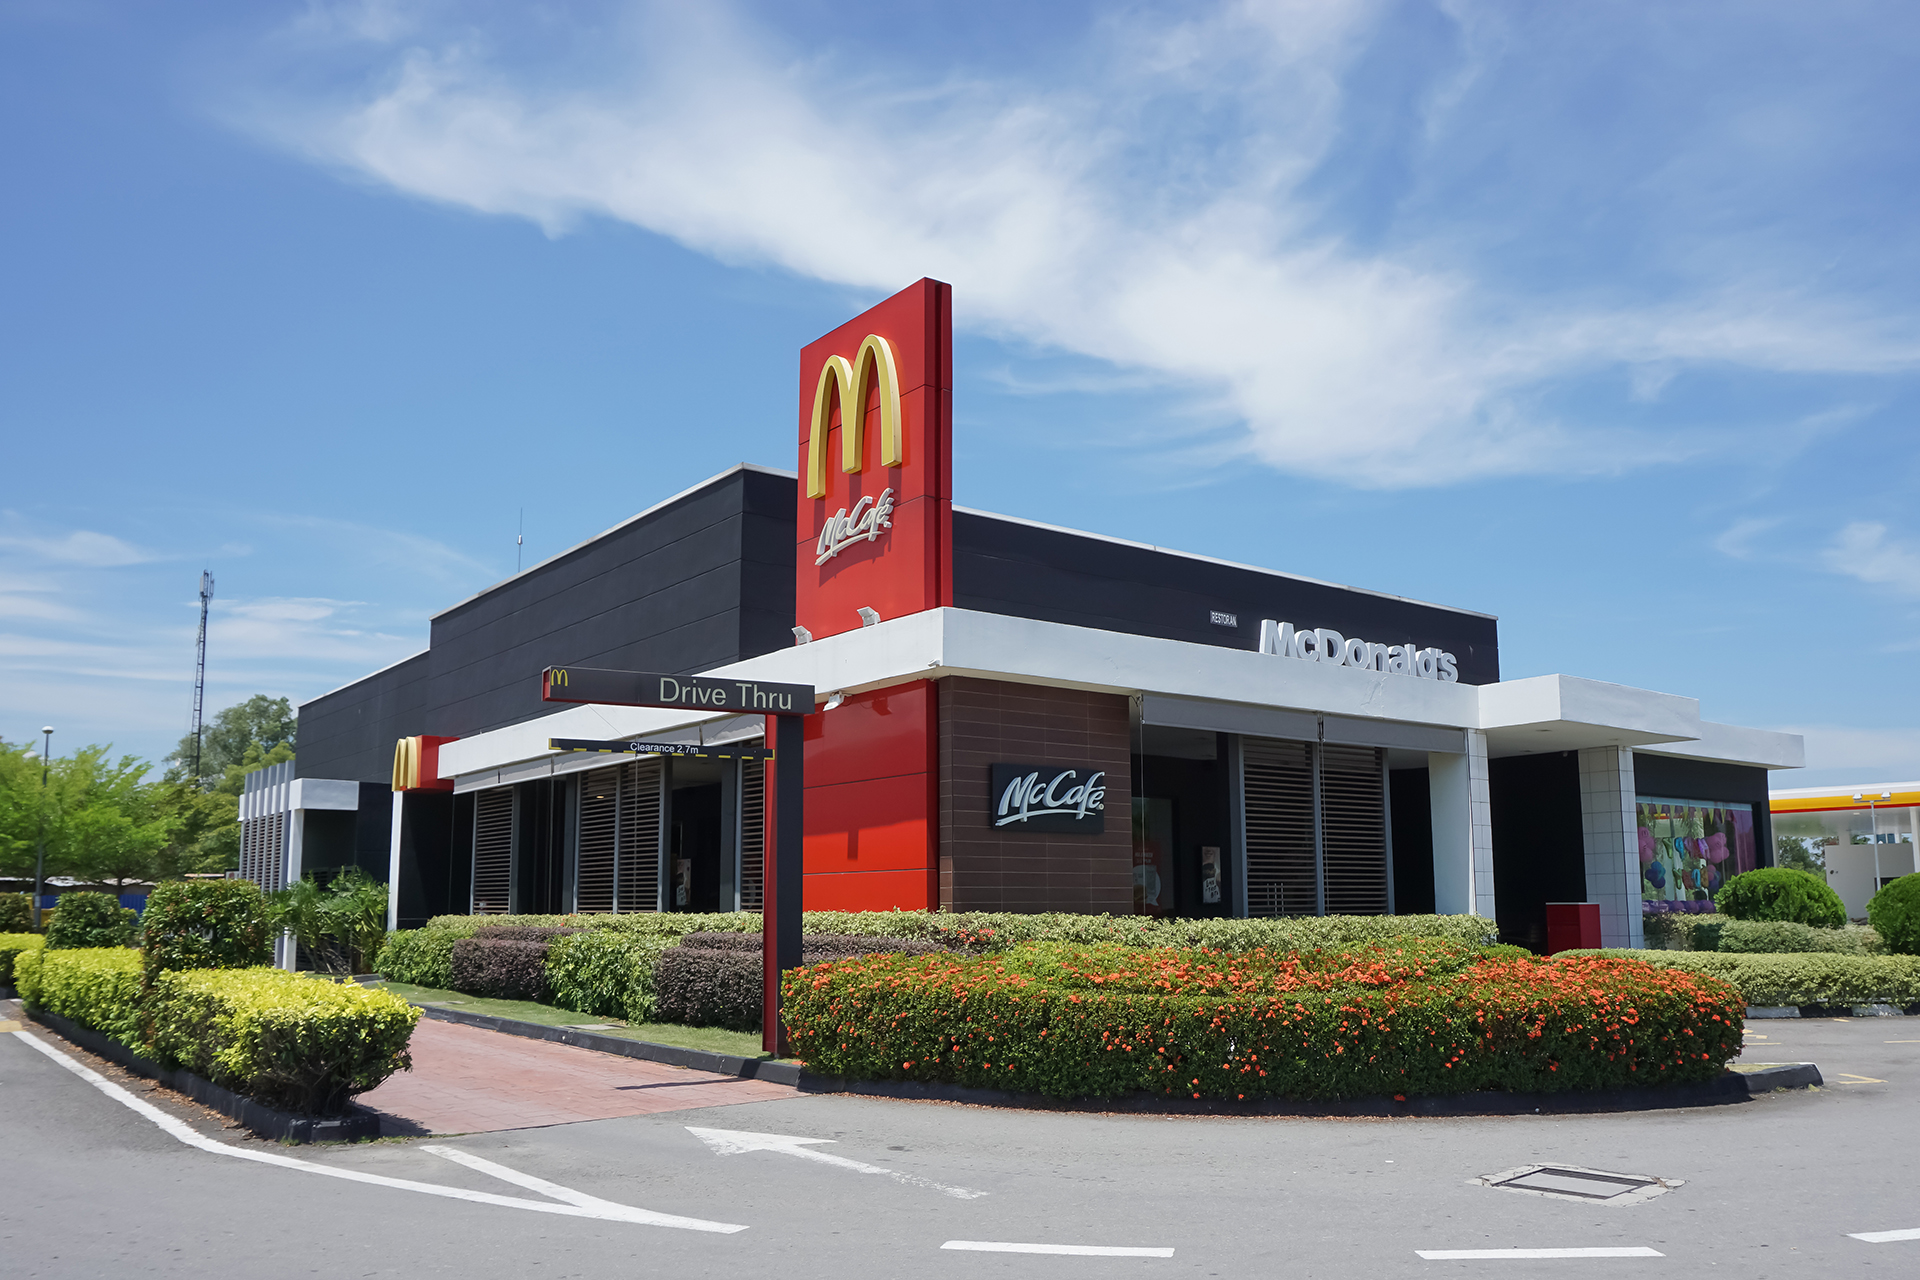 ماكدونالدز ماليزيا تبحث تسوية قضيتها مع “بي دي إس” خارج القضاء | سياسة – البوكس نيوز